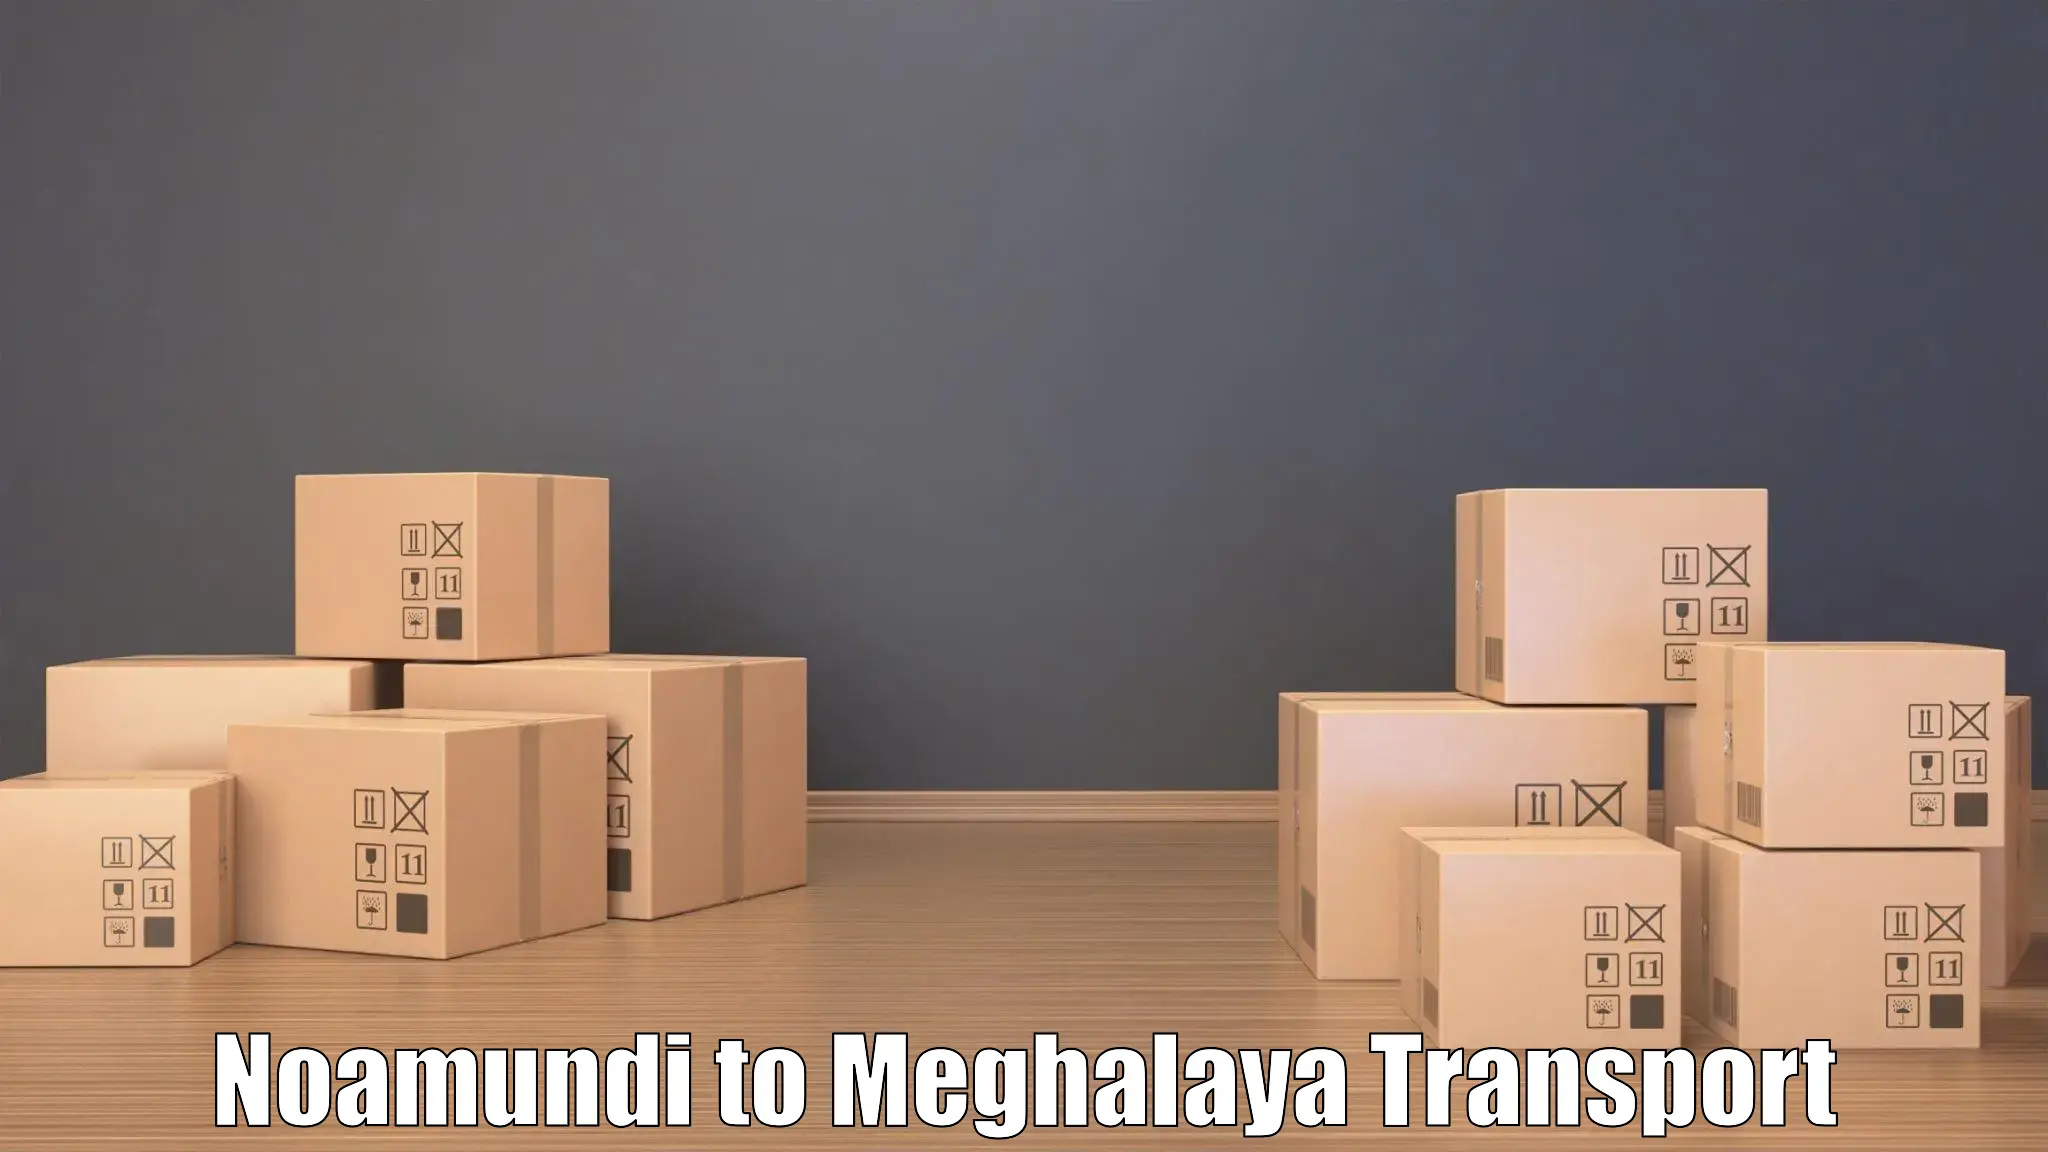 Daily parcel service transport Noamundi to NIT Meghalaya